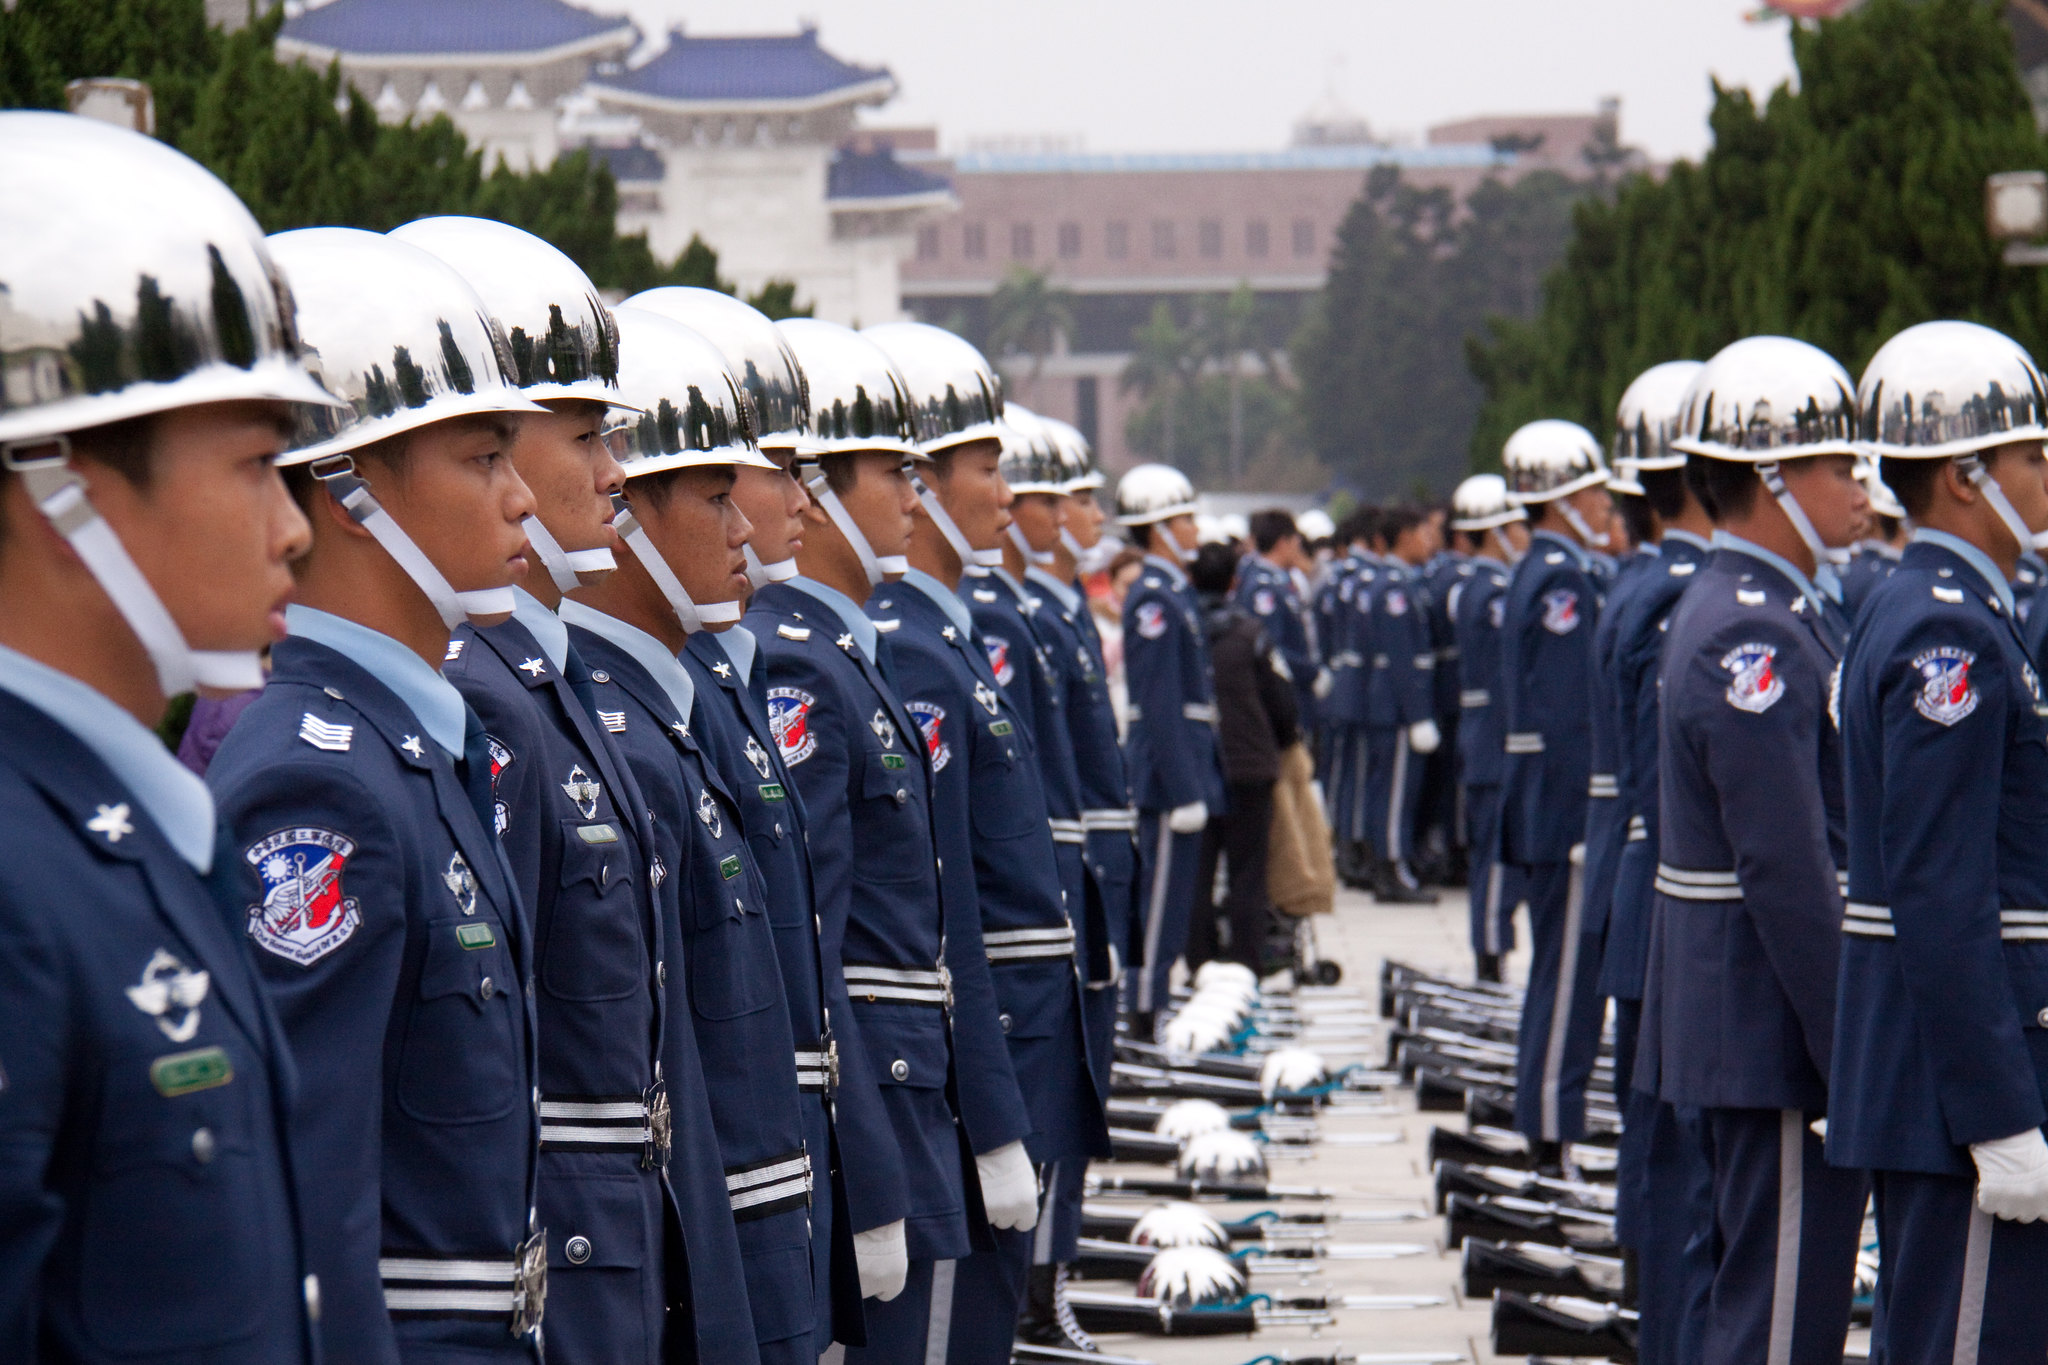 Rekke med soldater kledd i blå uniformer.